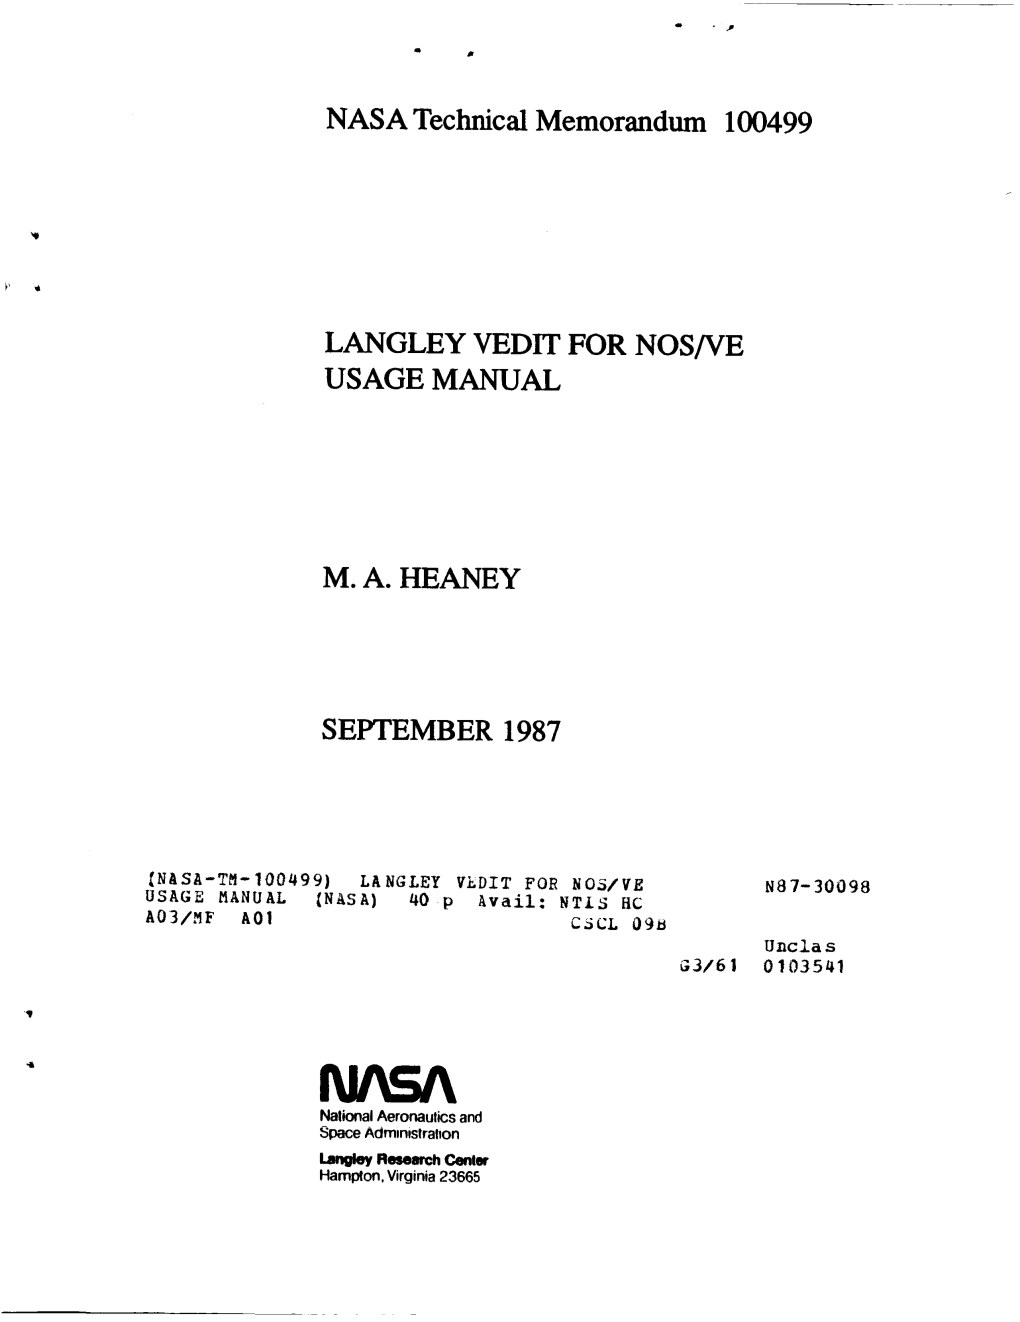 Langley Vedit for Nos/Ve Usage Manual